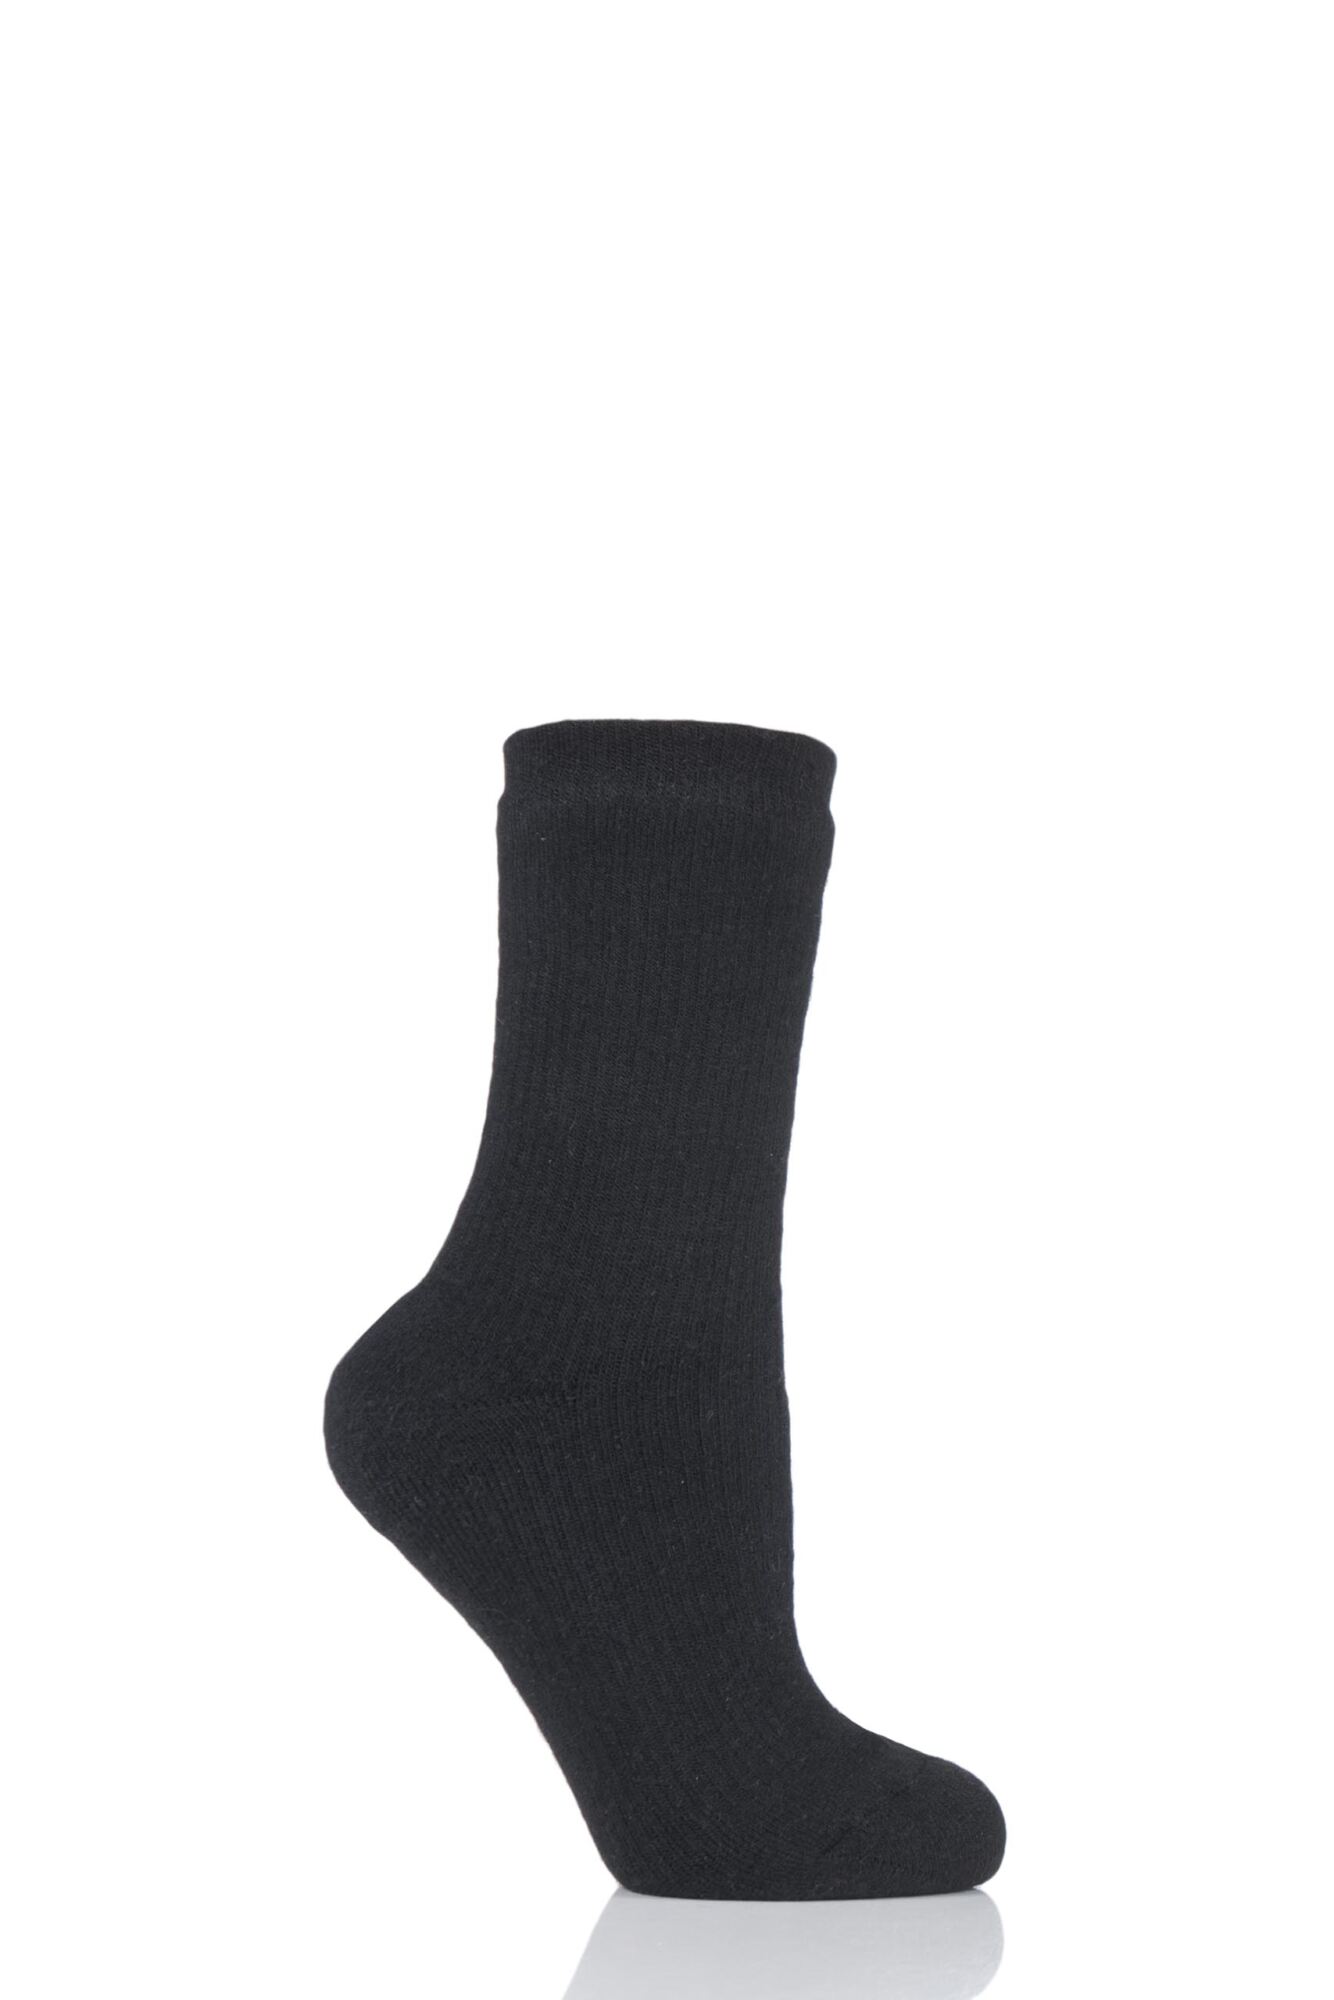 1 Pair Waterproof 2.6 Tog Socks Unisex - Heat Holders